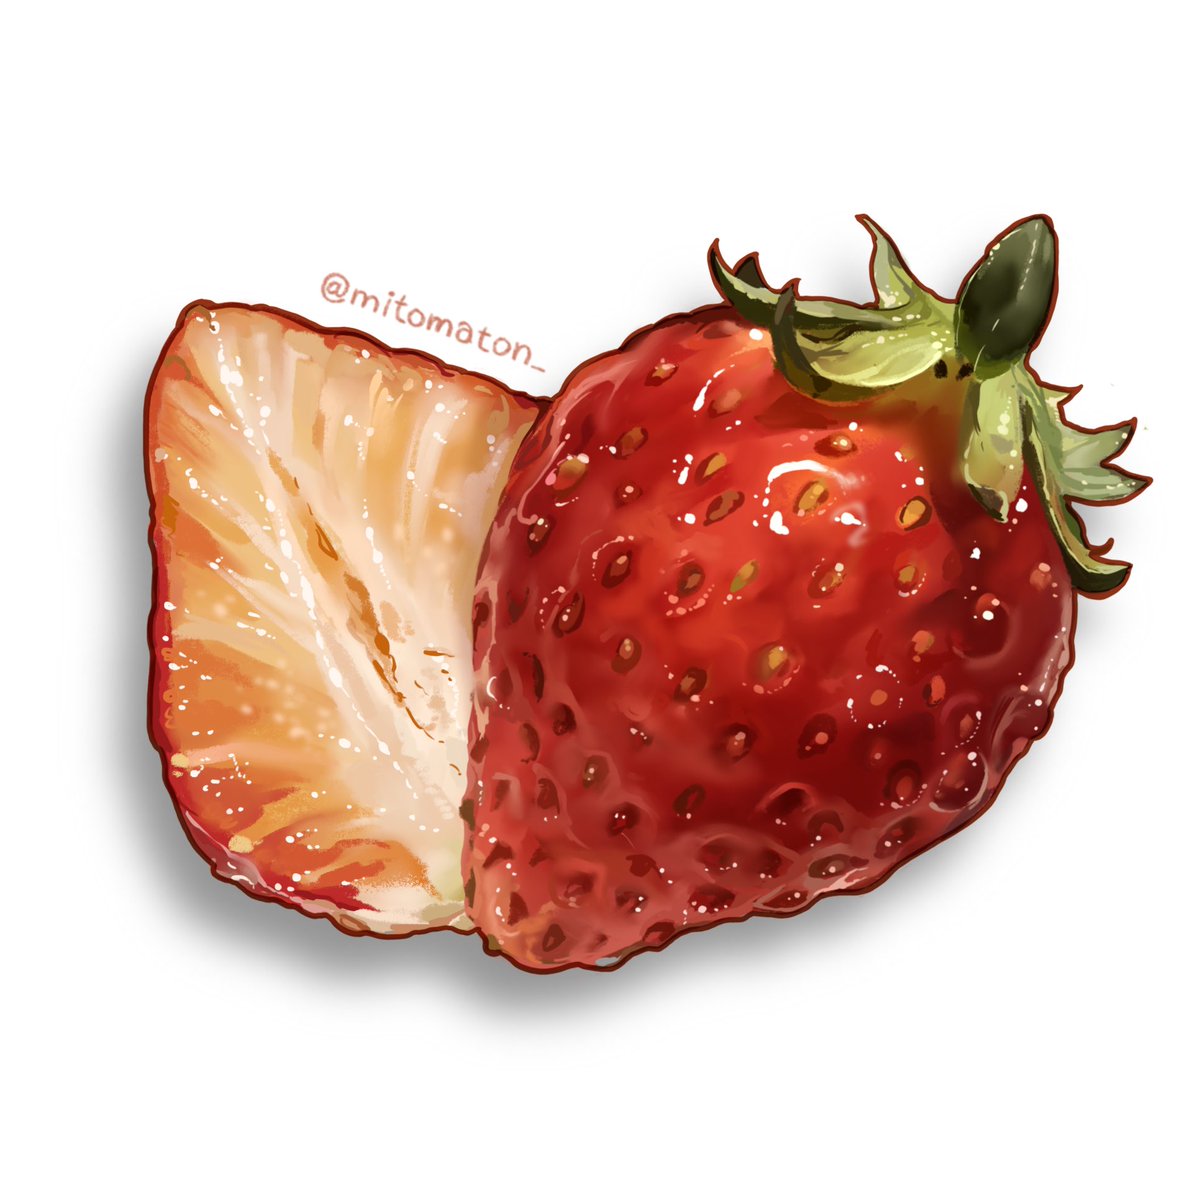 「新しいイラストを描きました!久々のフルーツ、苺のイラストです🍓

I drew」|ミトマトンのイラスト